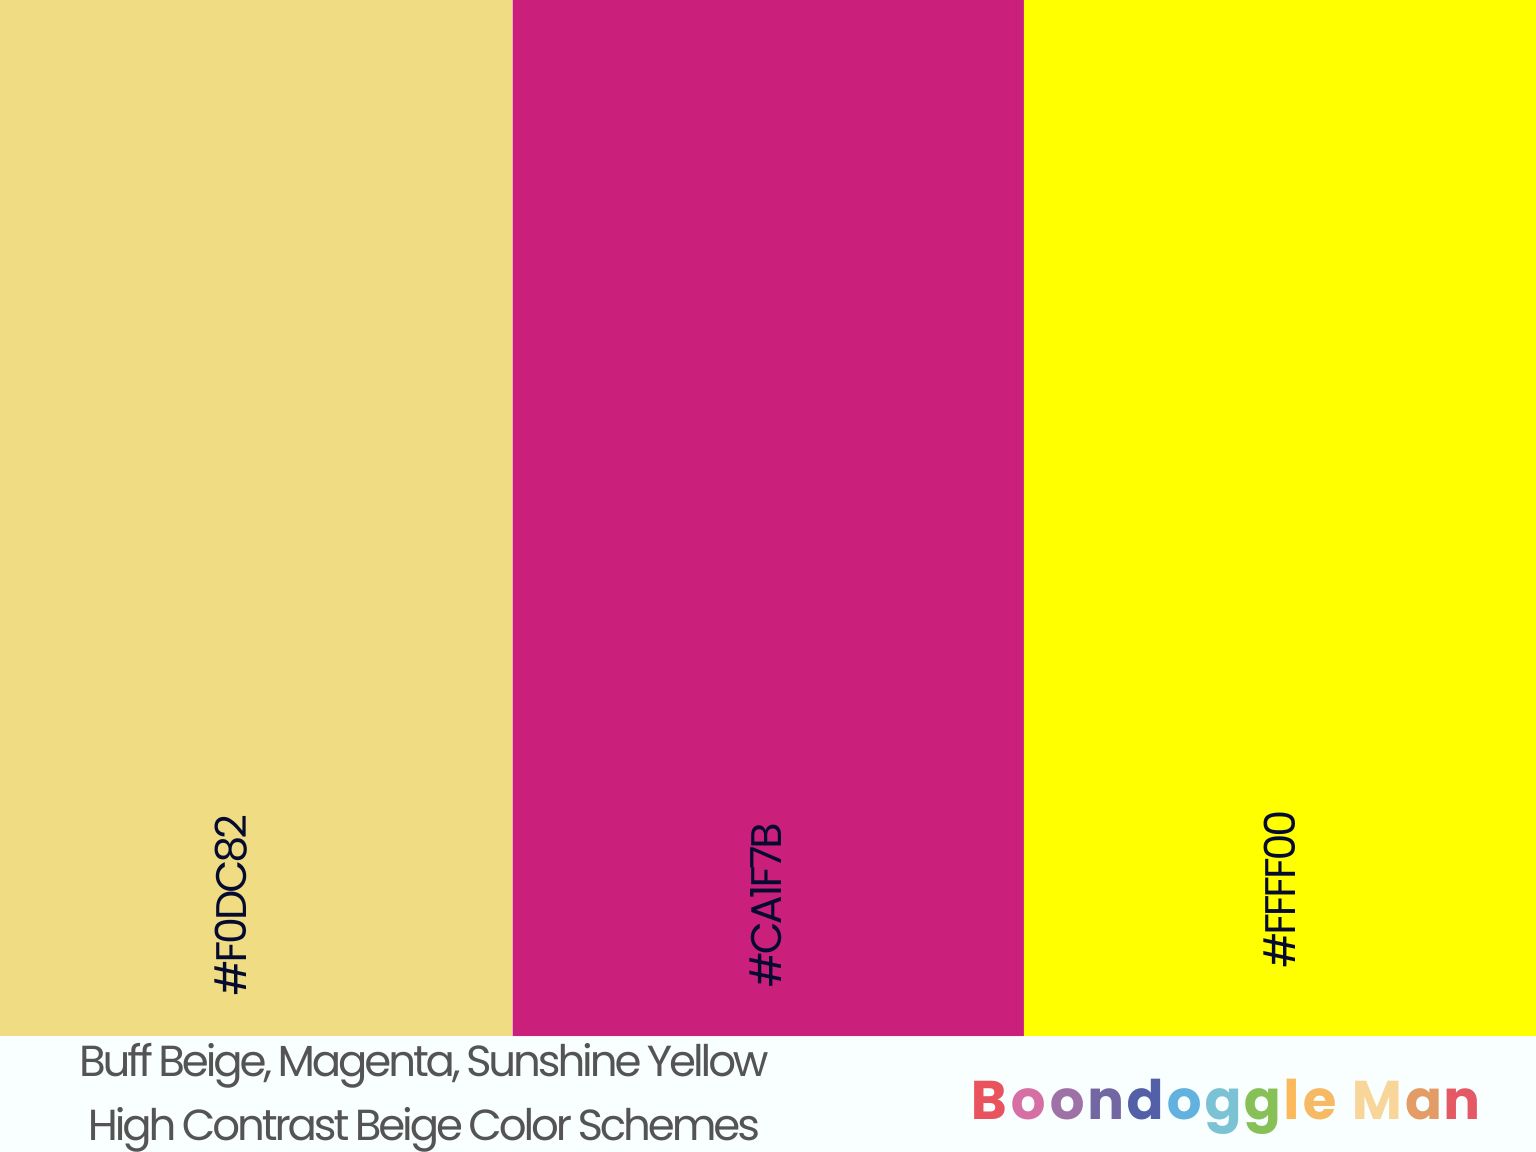 Buff Beige, Magenta, Sunshine Yellow